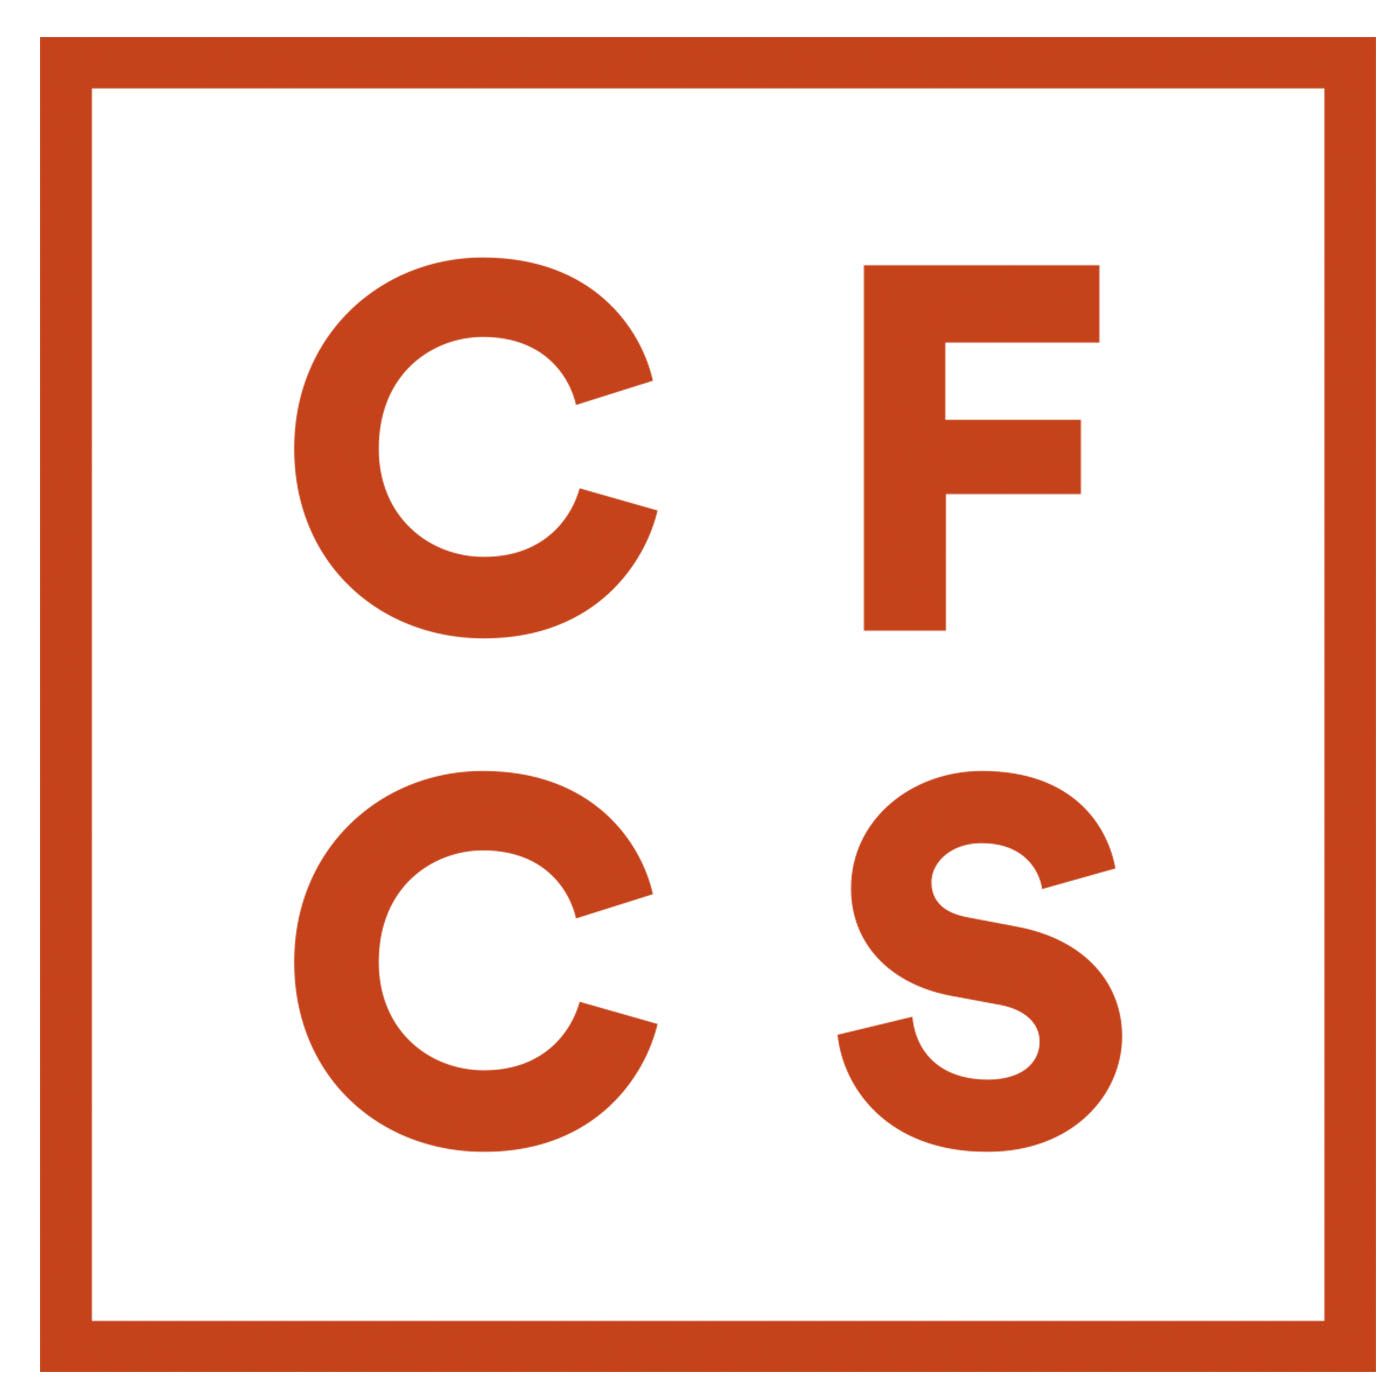 ACFCS Financial CrimeCast